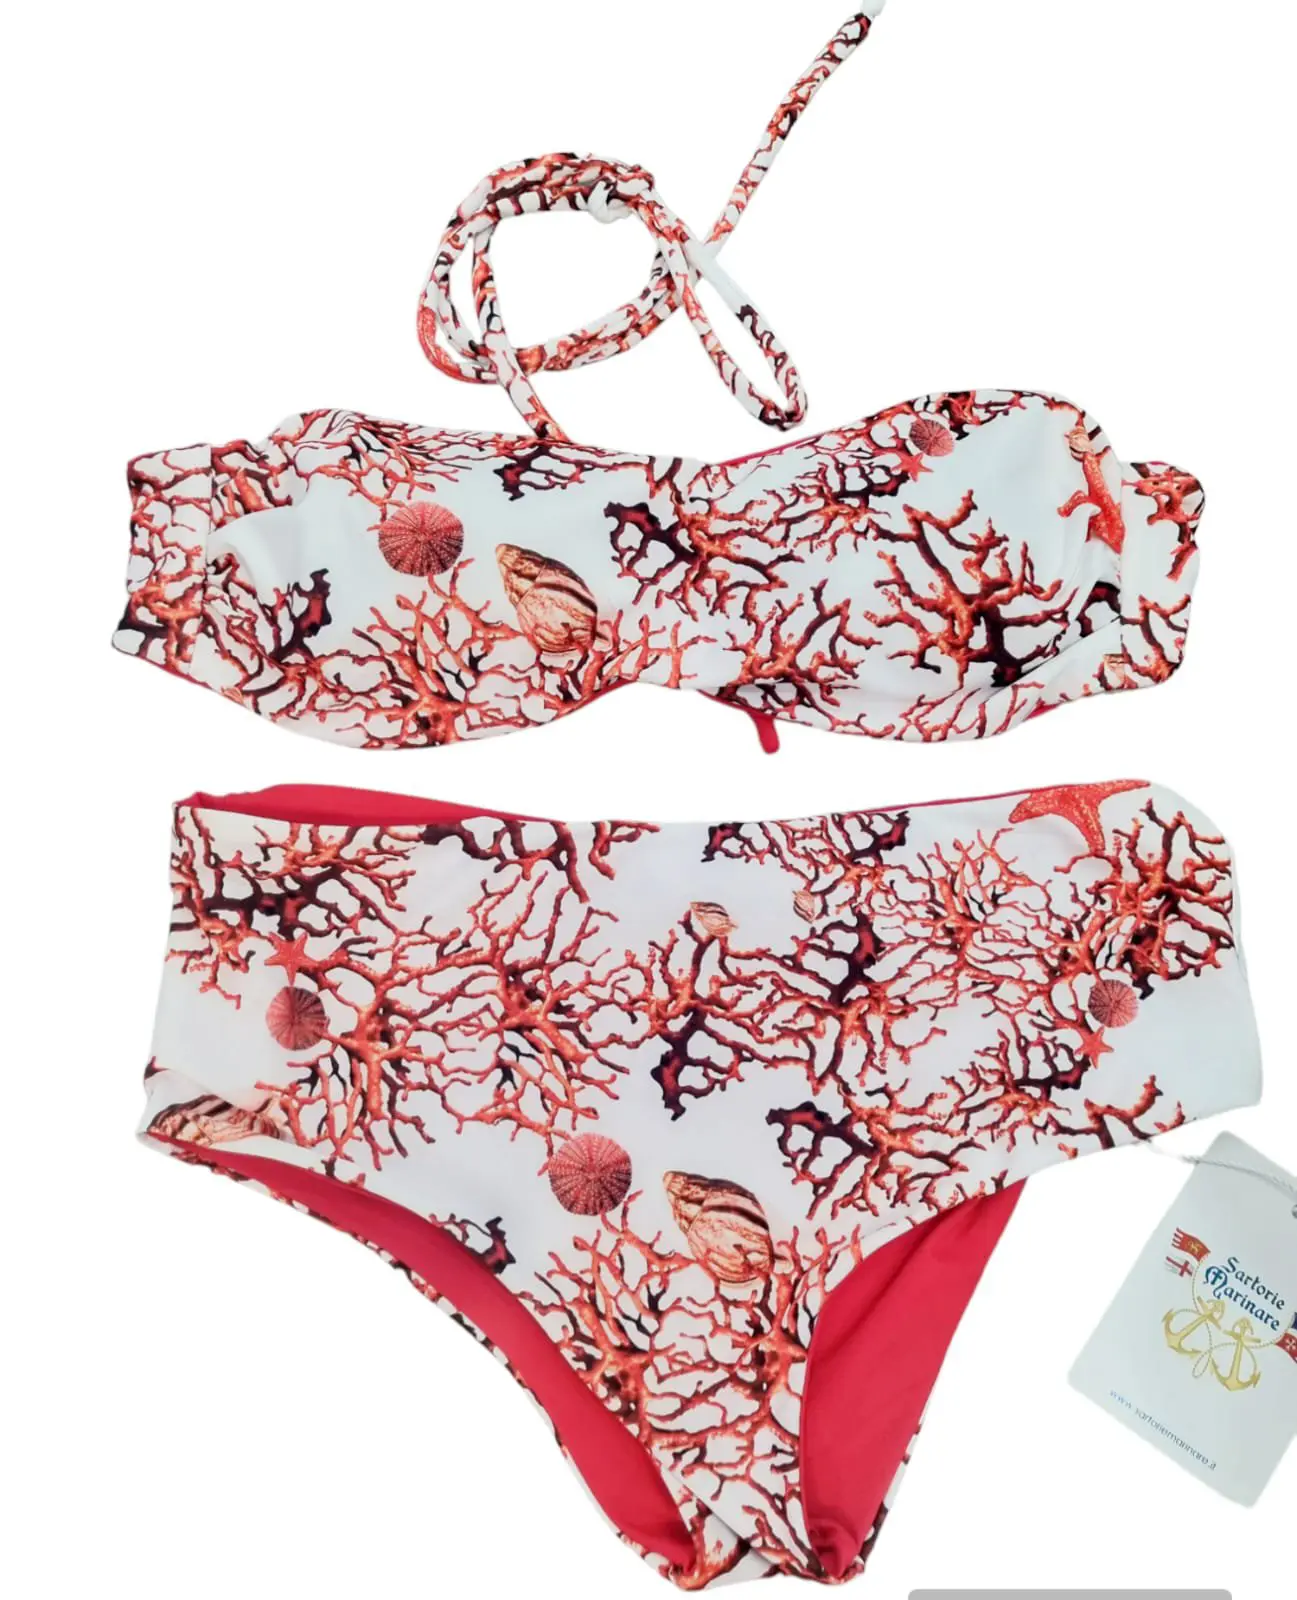 Bikini bandeau double face avec possibilité d'insérer des lacets, culotte culotte motif corail et rouge Taille S.